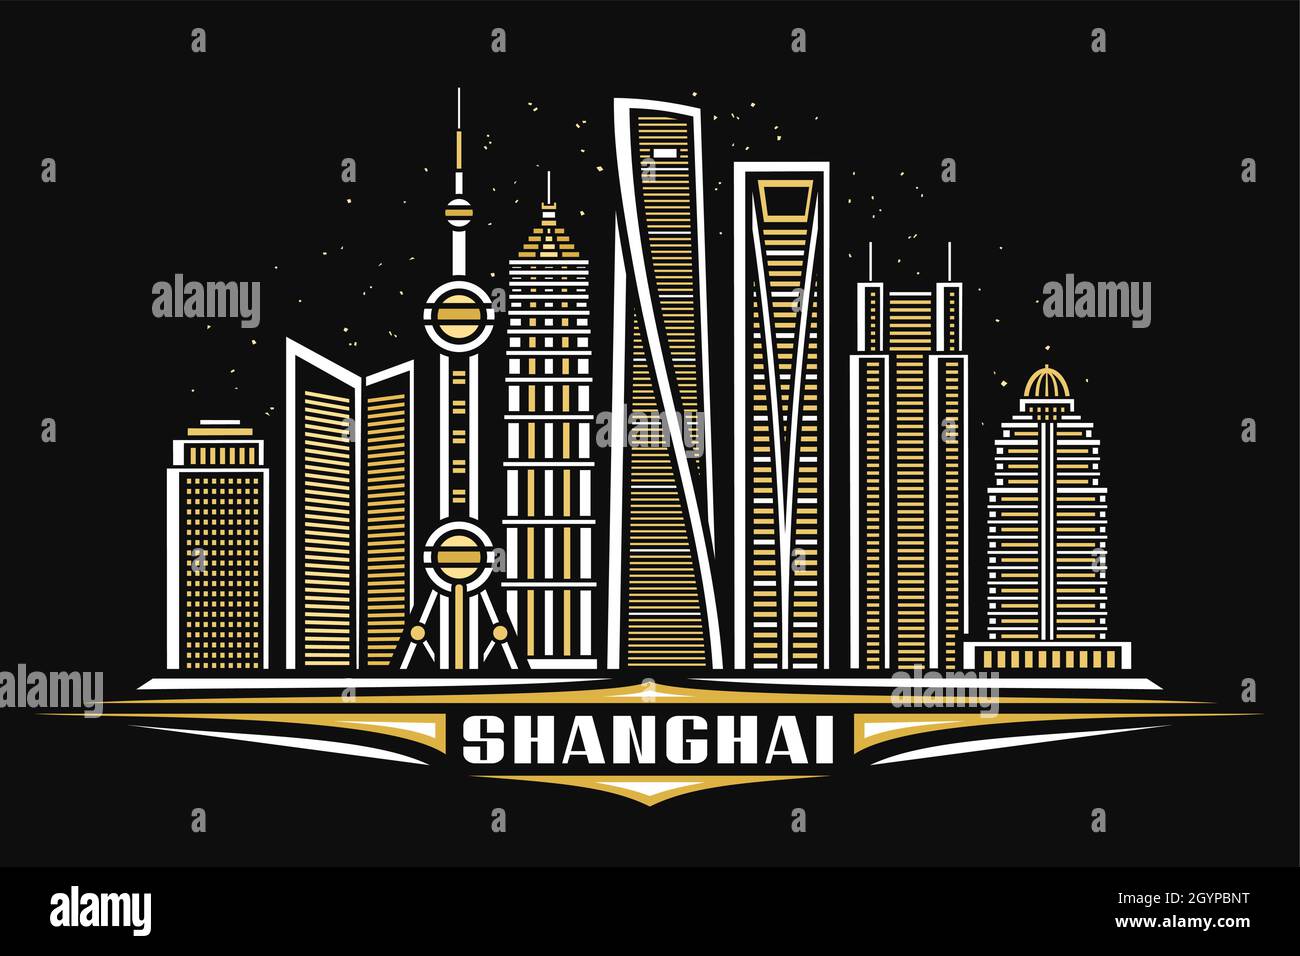 Illustrazione vettoriale di Shanghai, poster orizzontale con disegno lineare paesaggio urbano di Shanghai su sfondo cielo stellato crepuscolo, concetto di arte linea urbana asiatica Illustrazione Vettoriale